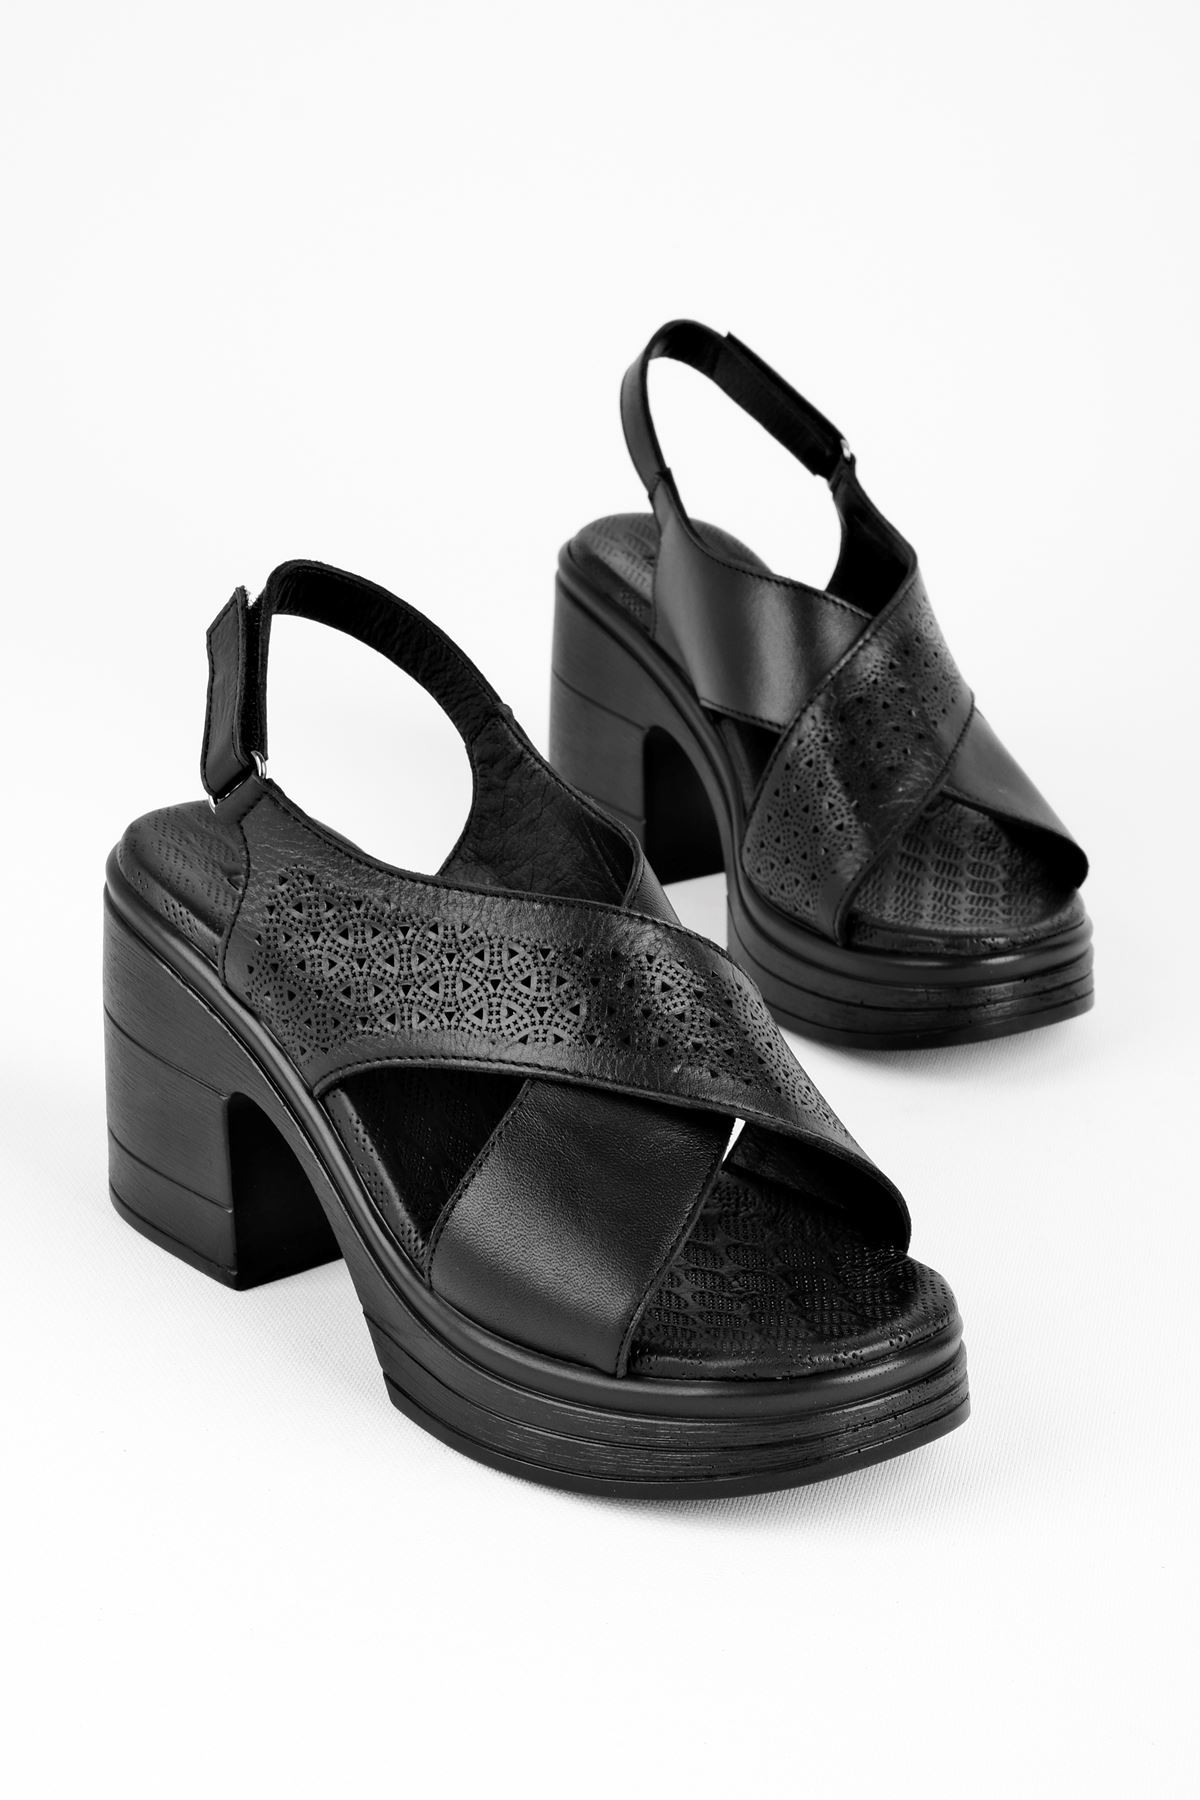 Femand Kadın Hakiki Deri Desenli Çapraz Bantlı Dolgu Topuk Sandalet B3119 - Siyah